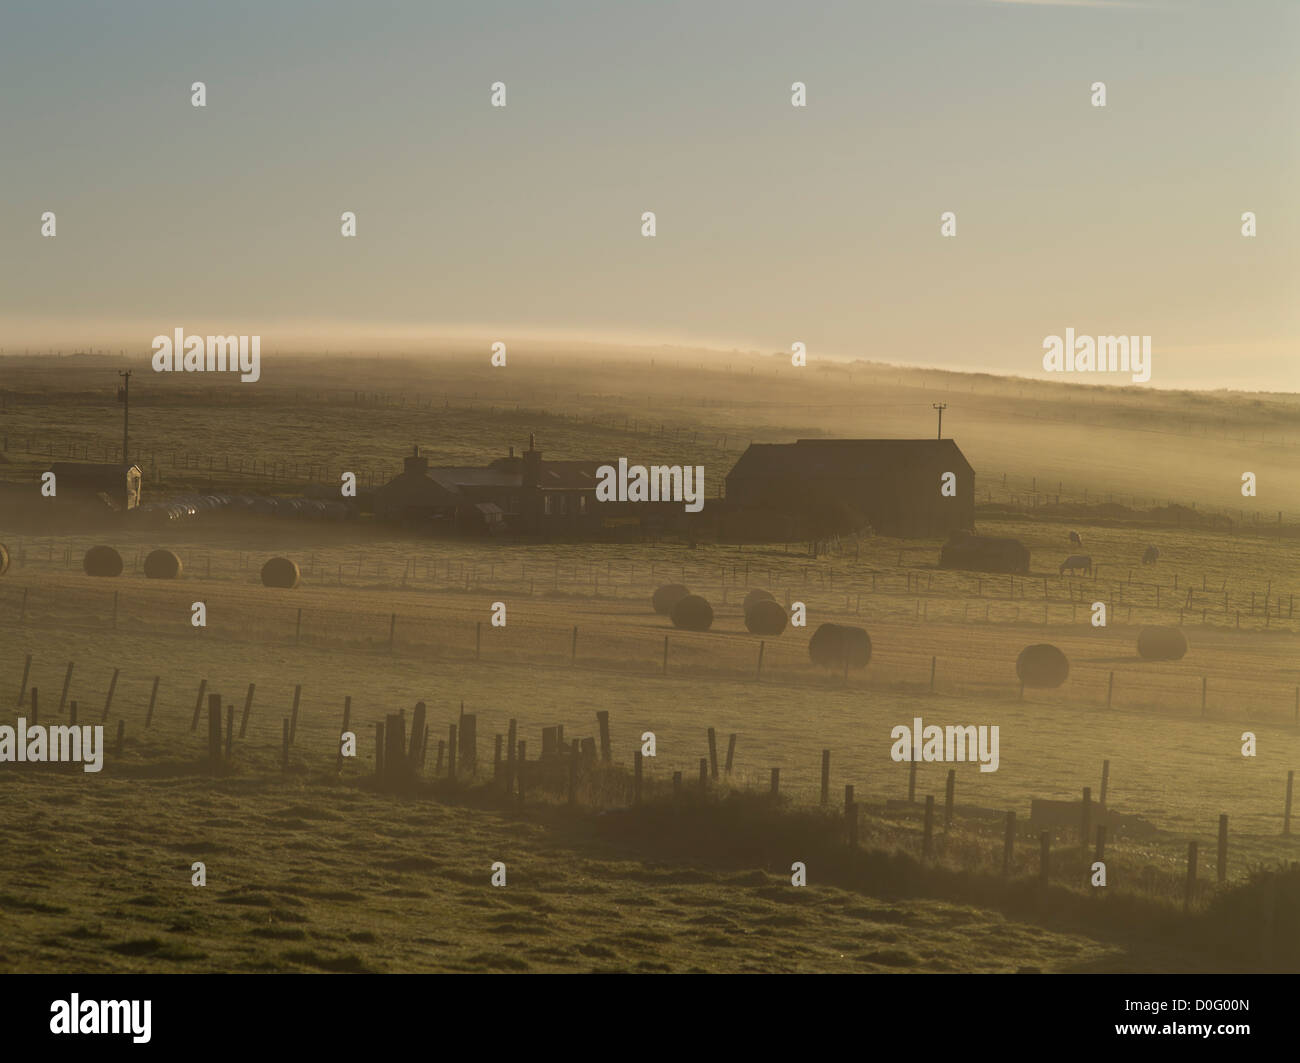 dh ORPHIR ORKNEY ferme écossaise balles de foin matin Brume ferme Écosse automne paysage fermes royaume-uni brouillard lumière terre Banque D'Images